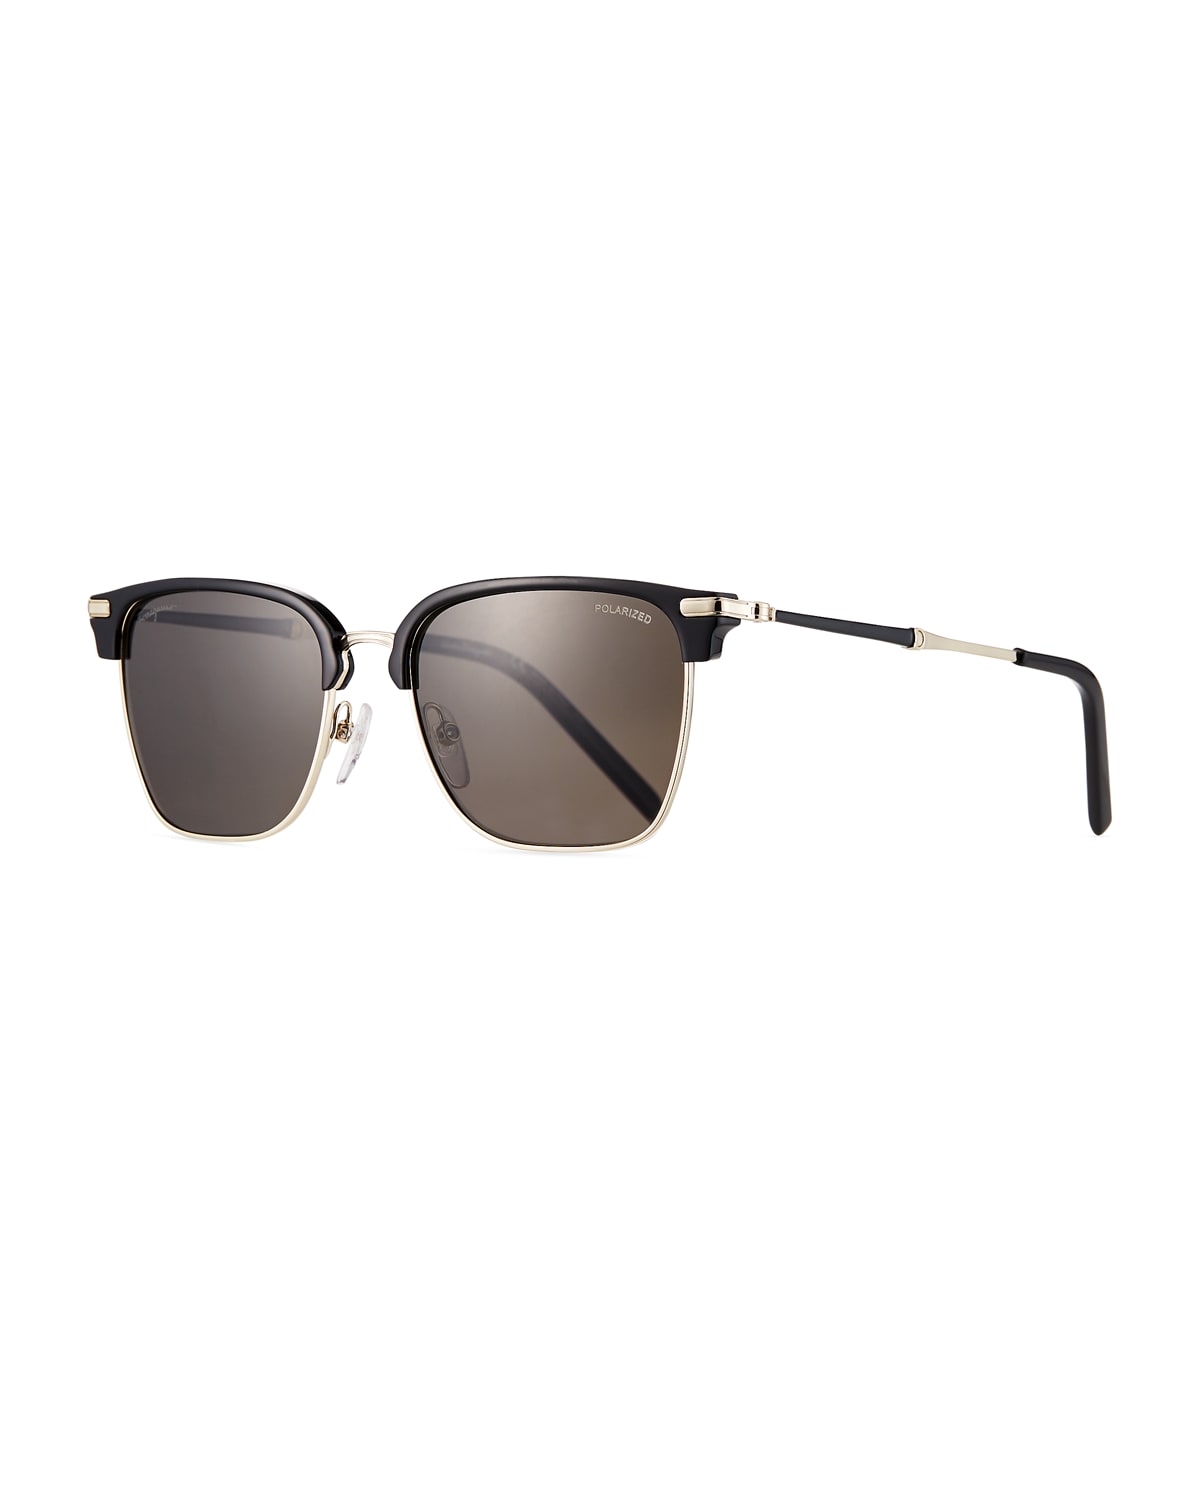 Salvatore Ferragamo Men's Polarized Square Double-Bridge Sunglasses ...